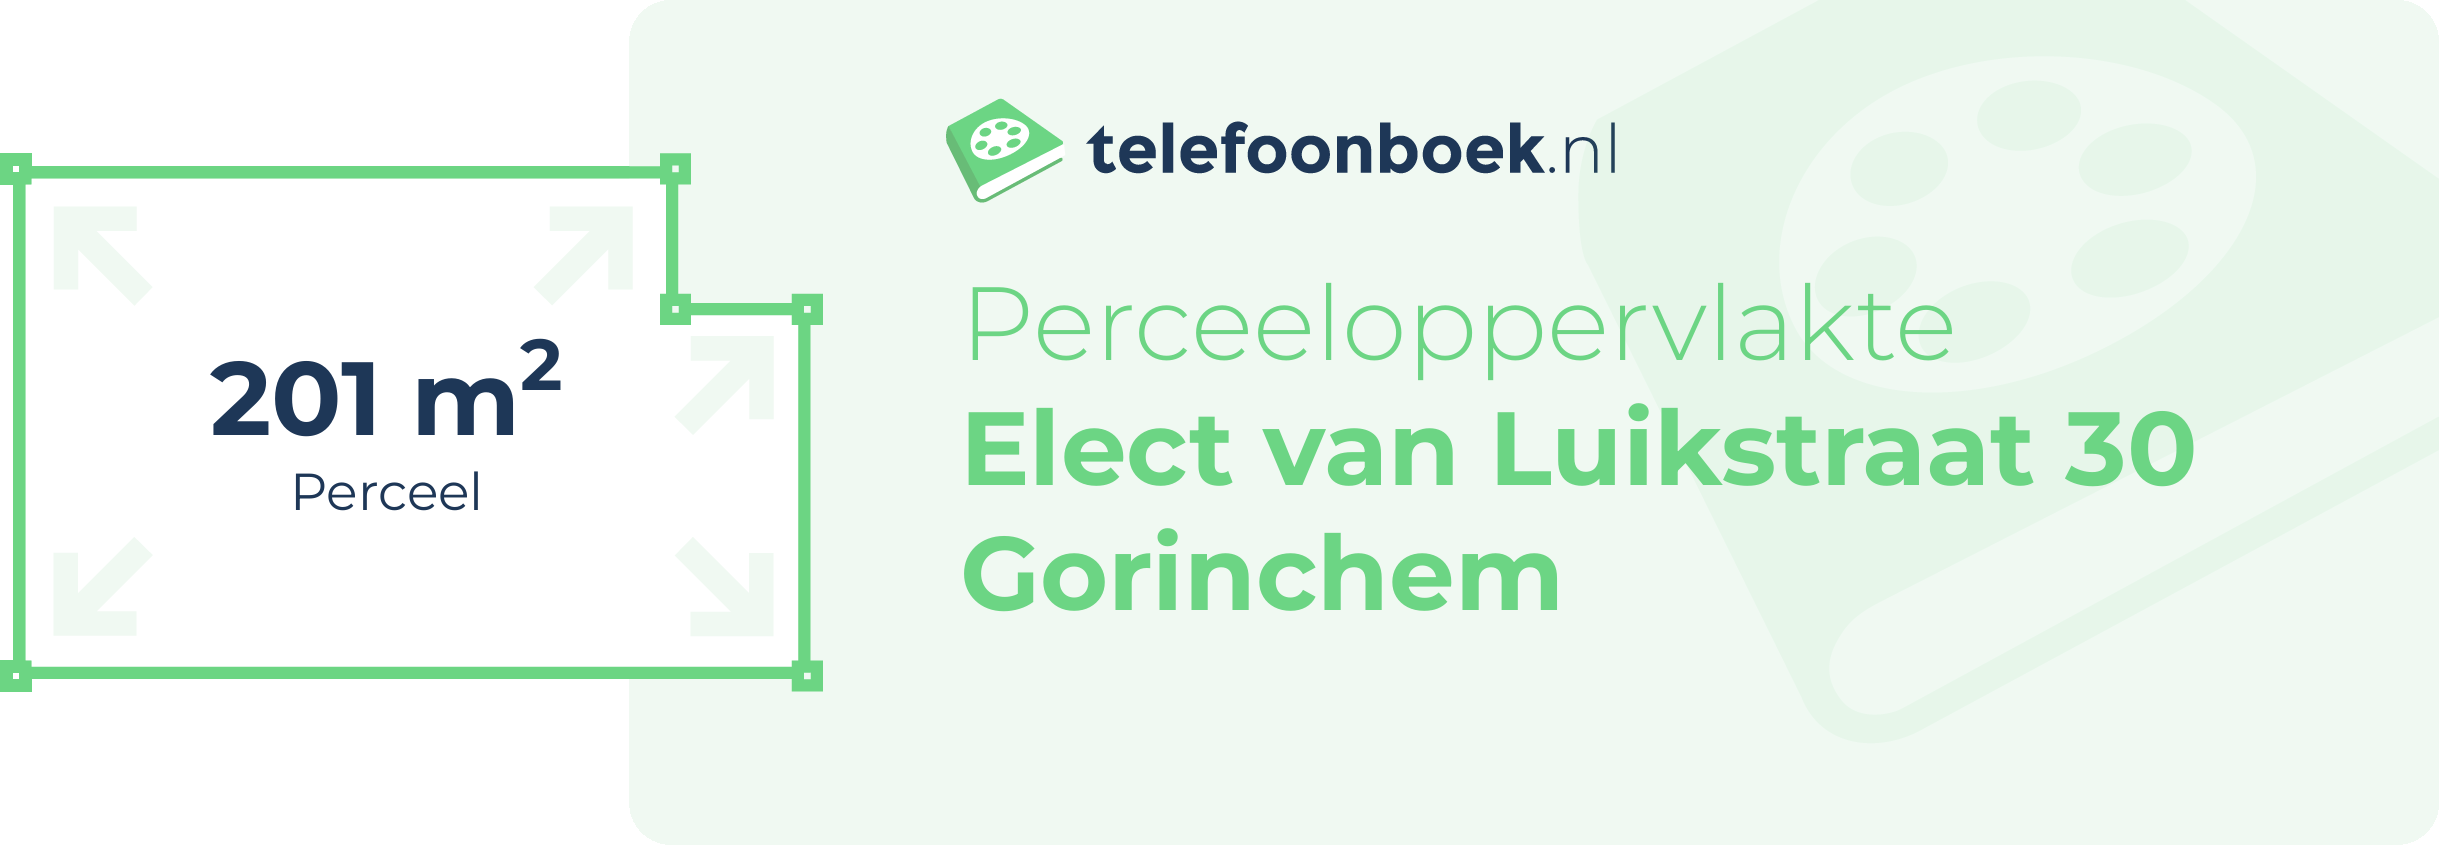 Perceeloppervlakte Elect Van Luikstraat 30 Gorinchem